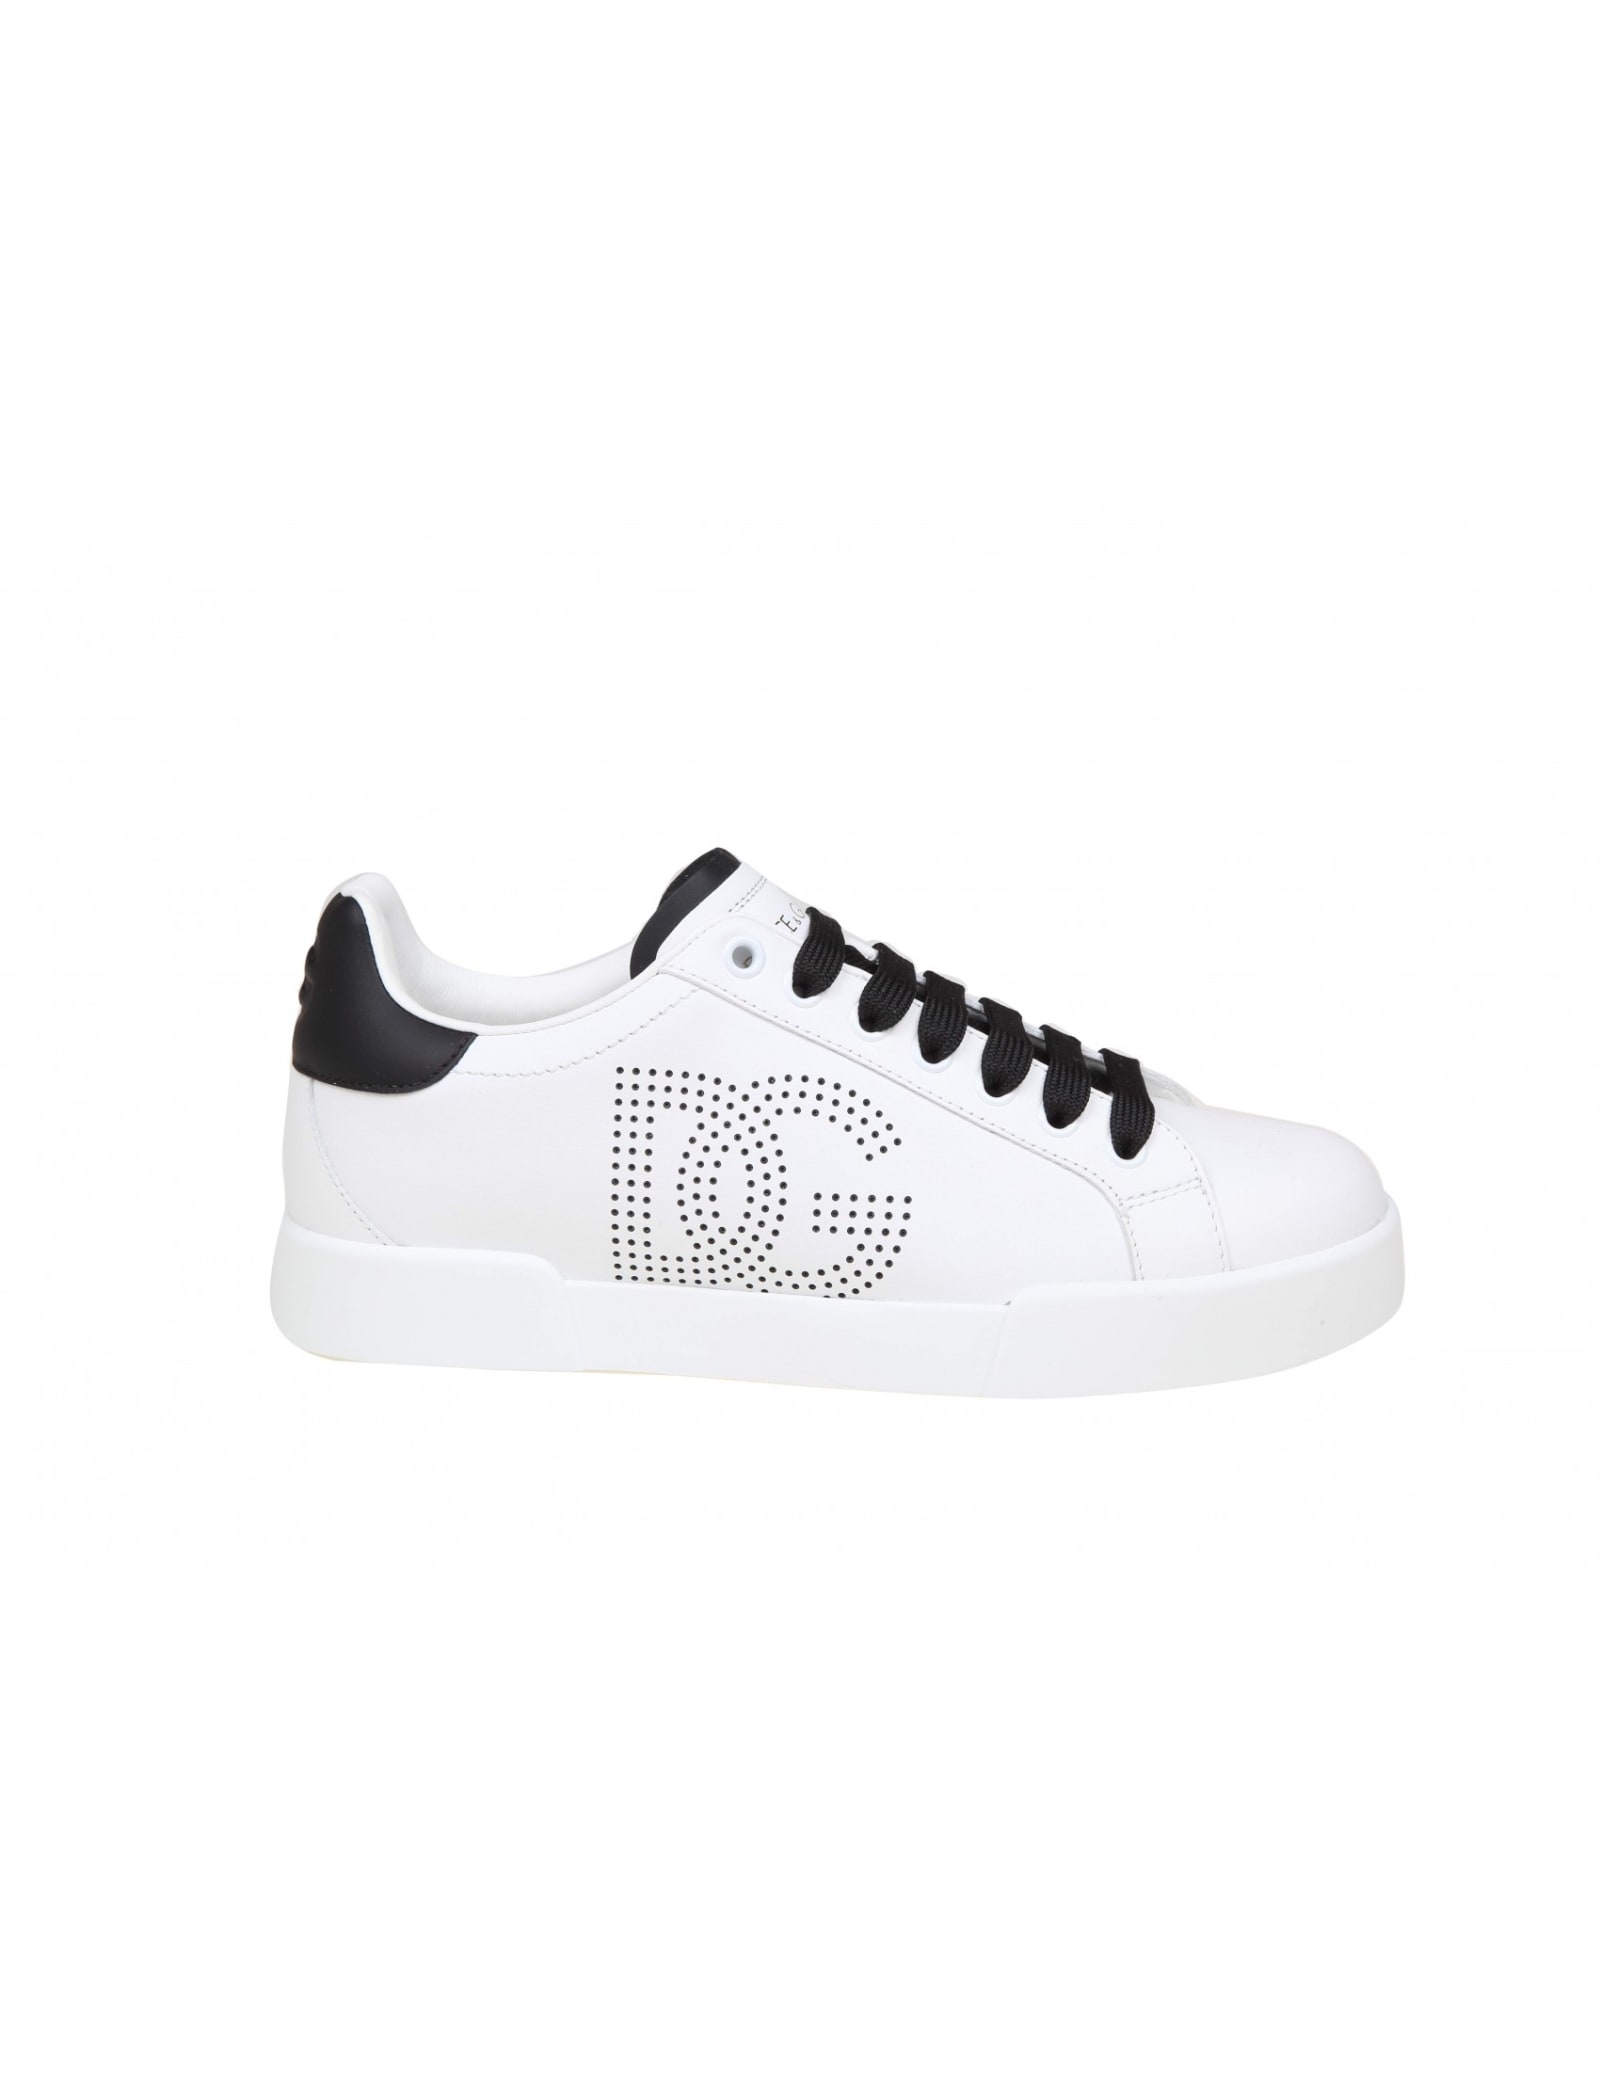 Dolce & Gabbana Dolce E Gabbana Portofino Light Sneakers In Black And White Leather